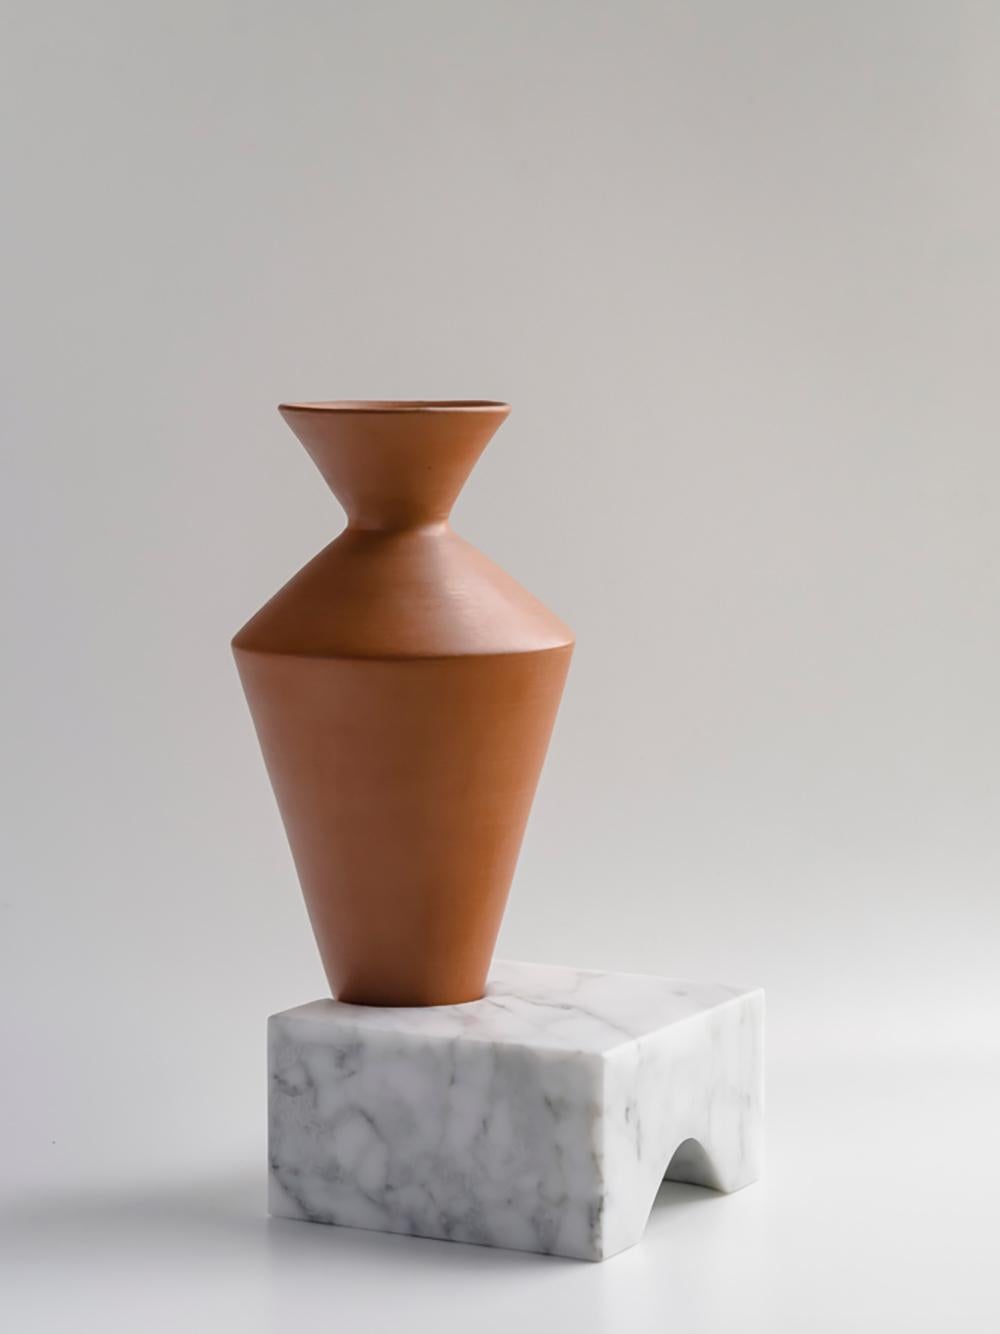 Die natürlichen Vasen aus Terrakotta, die in Elemente aus weißem Carrara eingearbeitet sind und sich im Gleichgewicht befinden, erzählen von Erfahrungen, vom Alltag, von Momenten; die Festigkeit der Basis verformt sich, um fragile Inhalte in ein